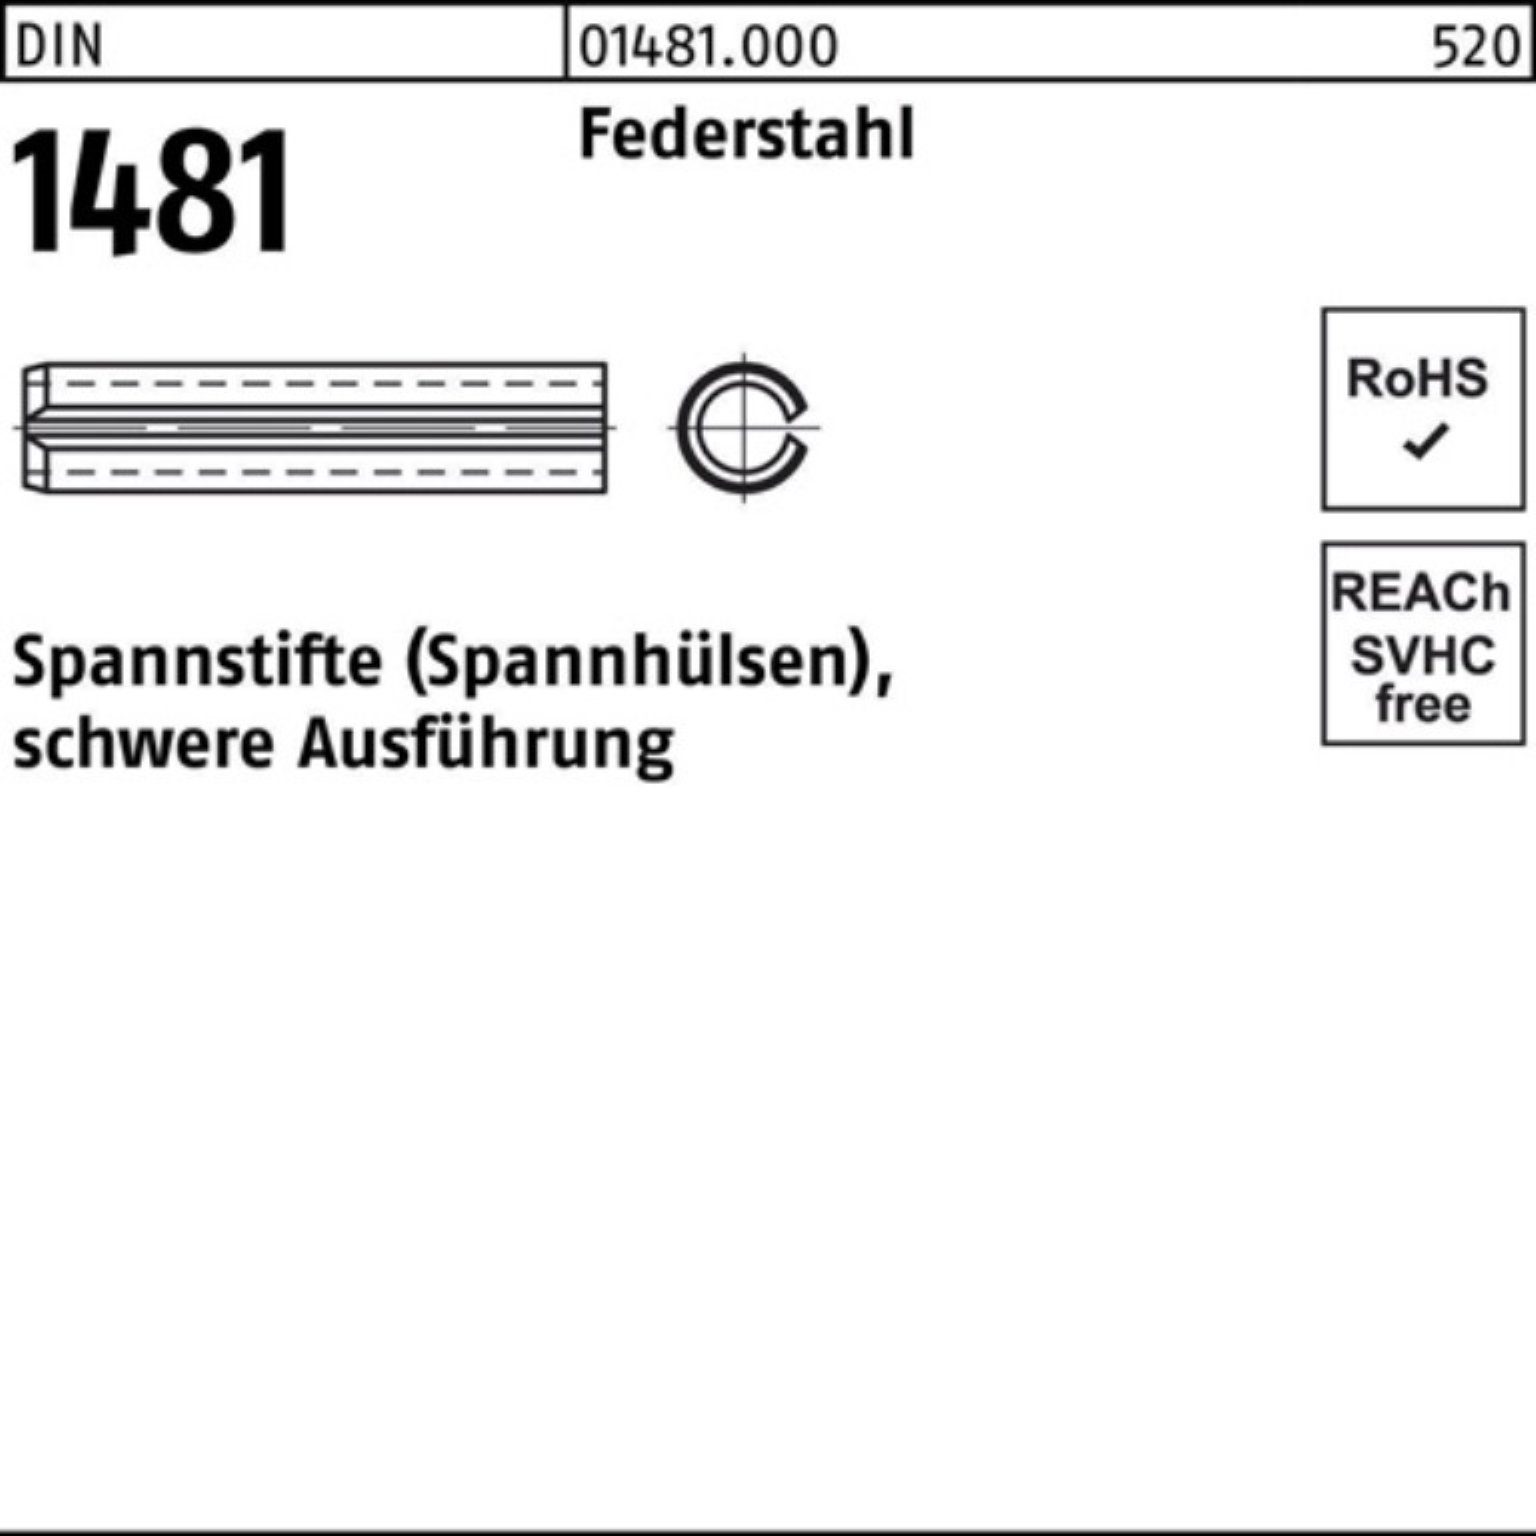 Reyher Spannstift 100er Pack Spannstift 2 26 Ausführung DIN Federstahl 1481 16x schwere